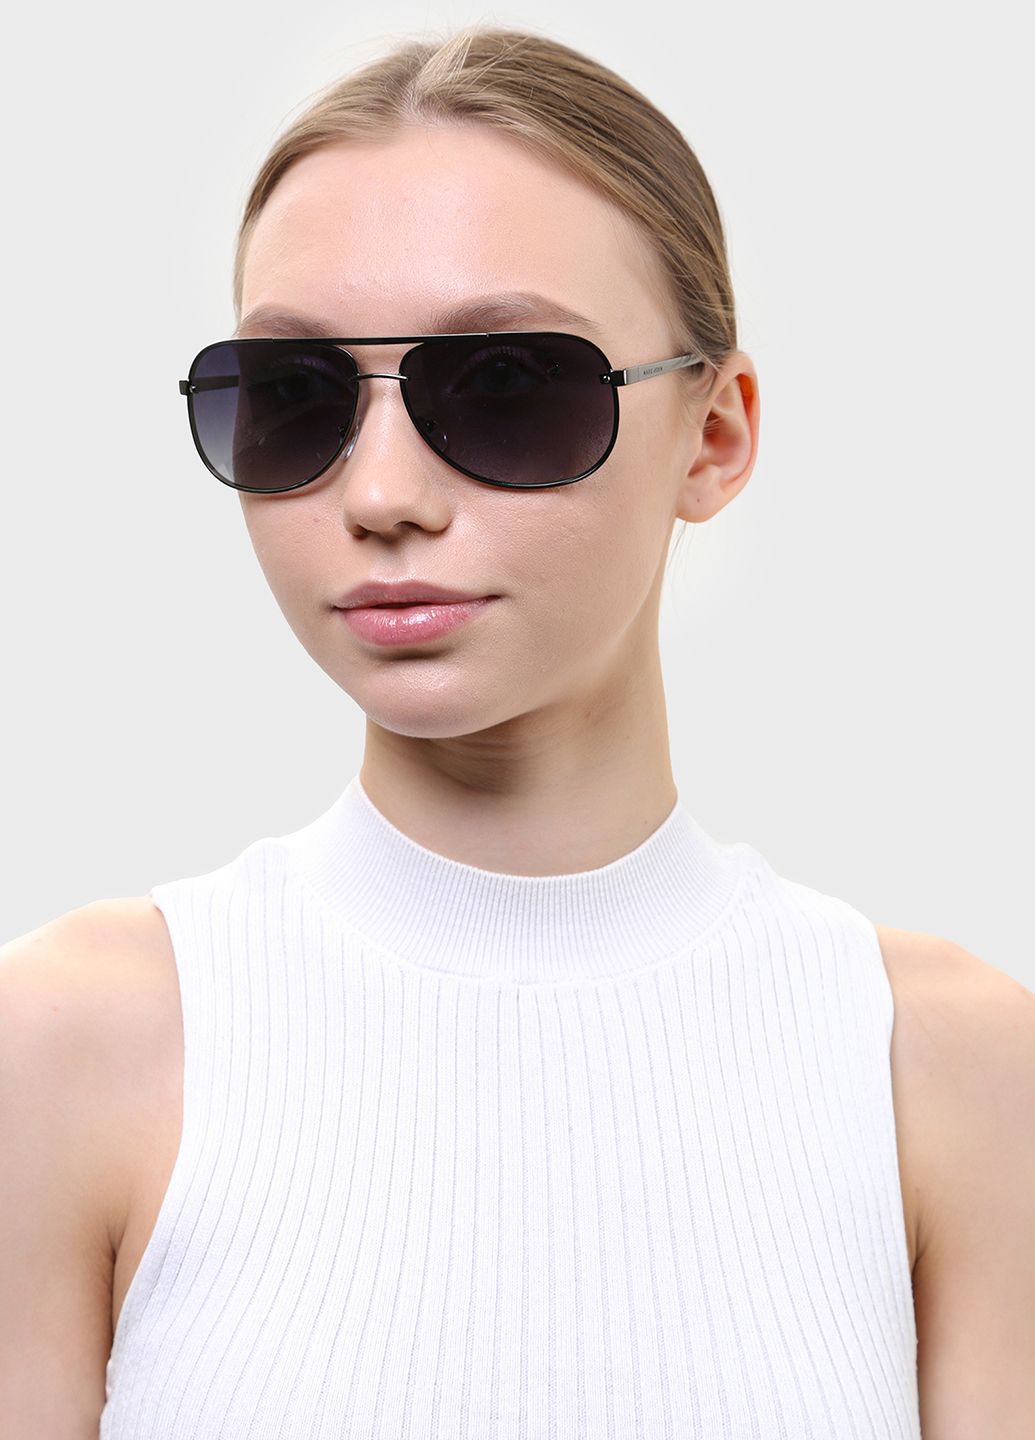 Купить Мужские солнцезащитные очки Marc John с поляризацией MJ0797 190036 - Черный в интернет-магазине